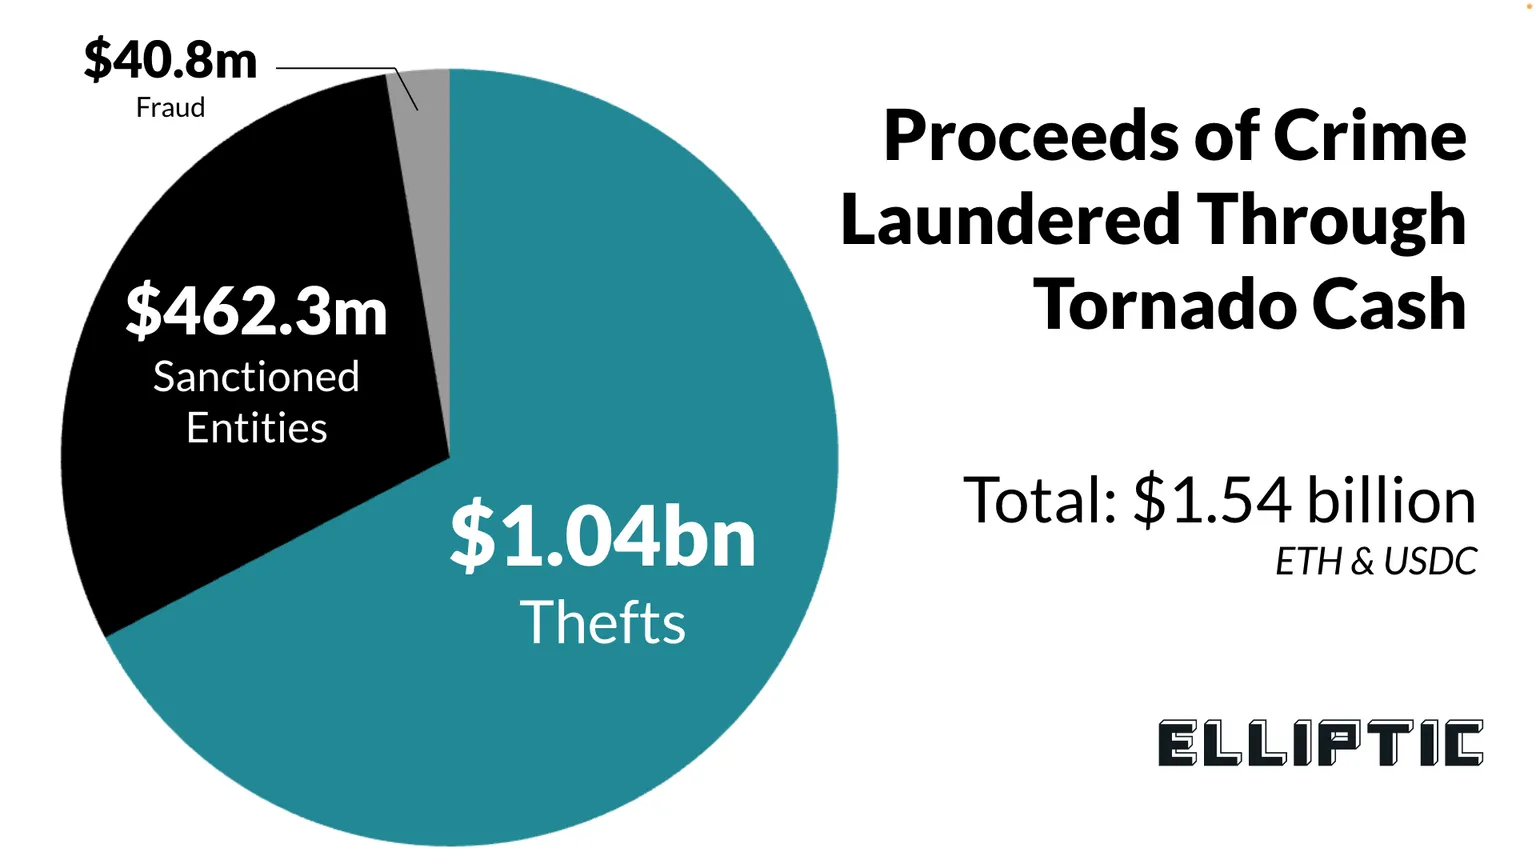 Gráfica circular que muestra el desglose de los fondos ilícitos en Tornado Cash.